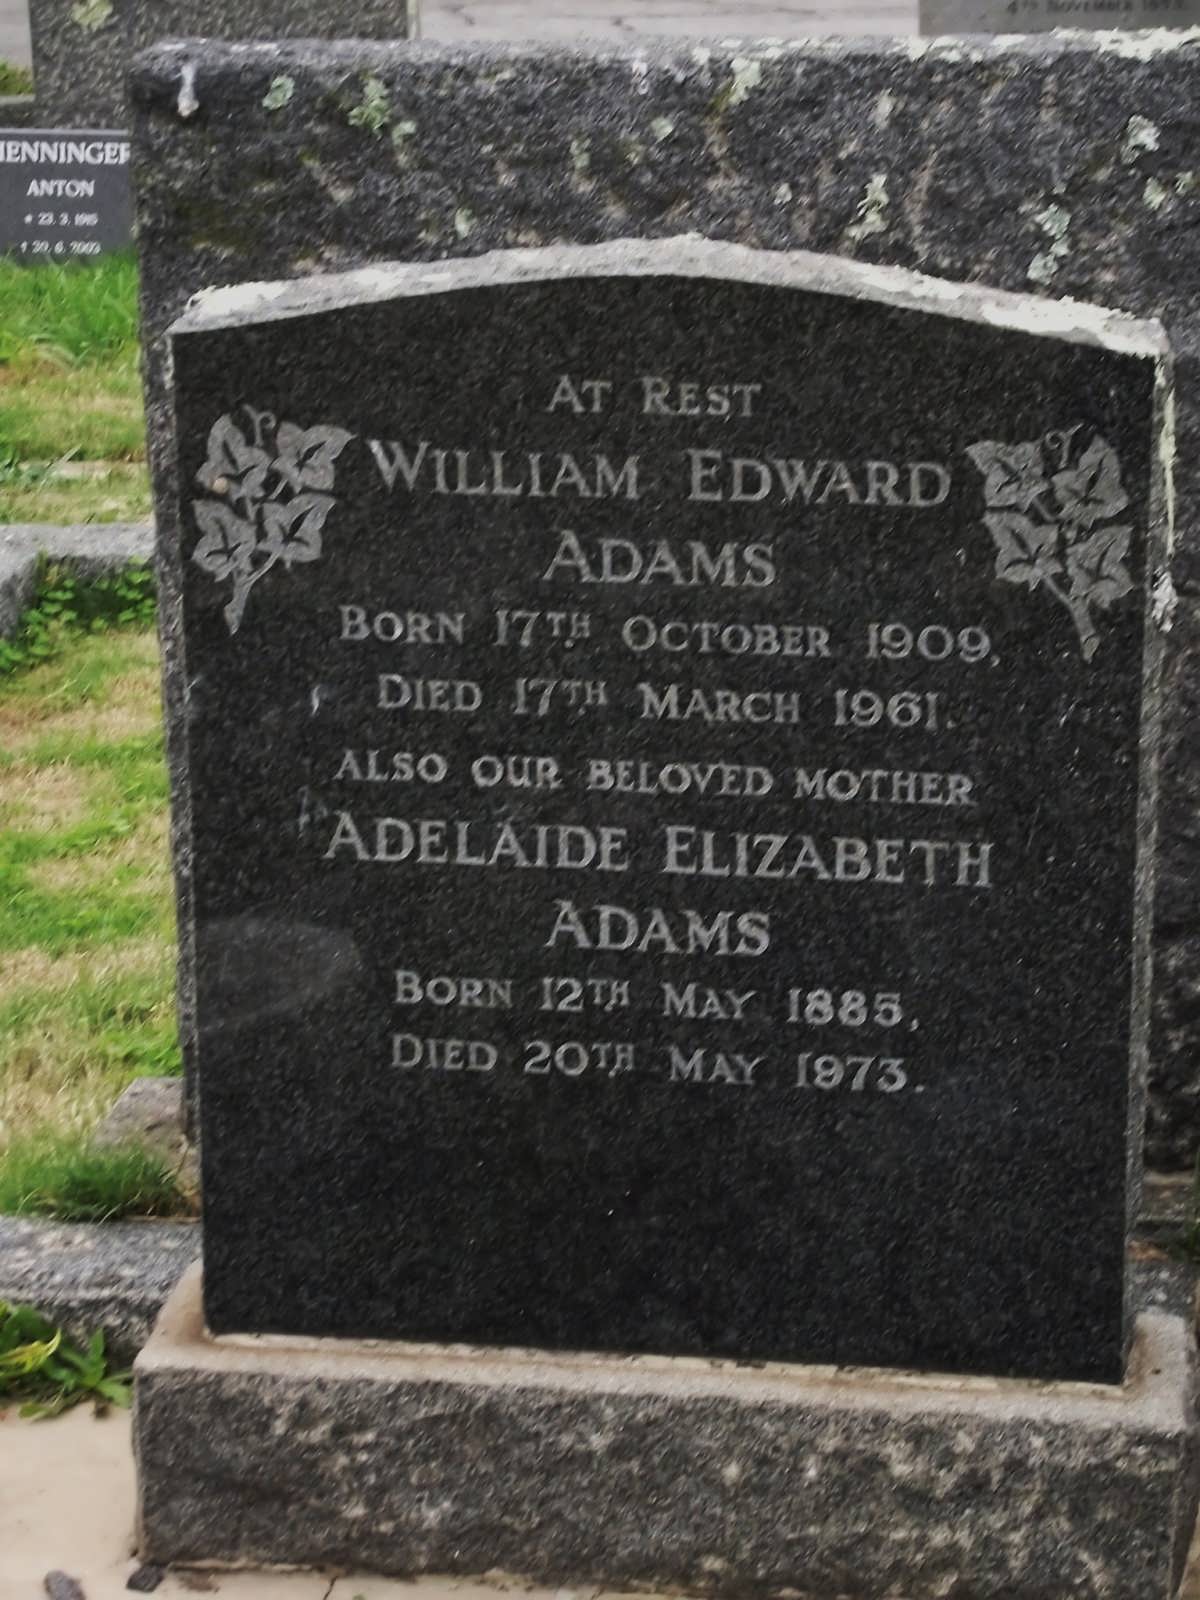 ADAMS William Edward 1909-1961 :: ADAMS Adelaide Elizabeth 1885-1973